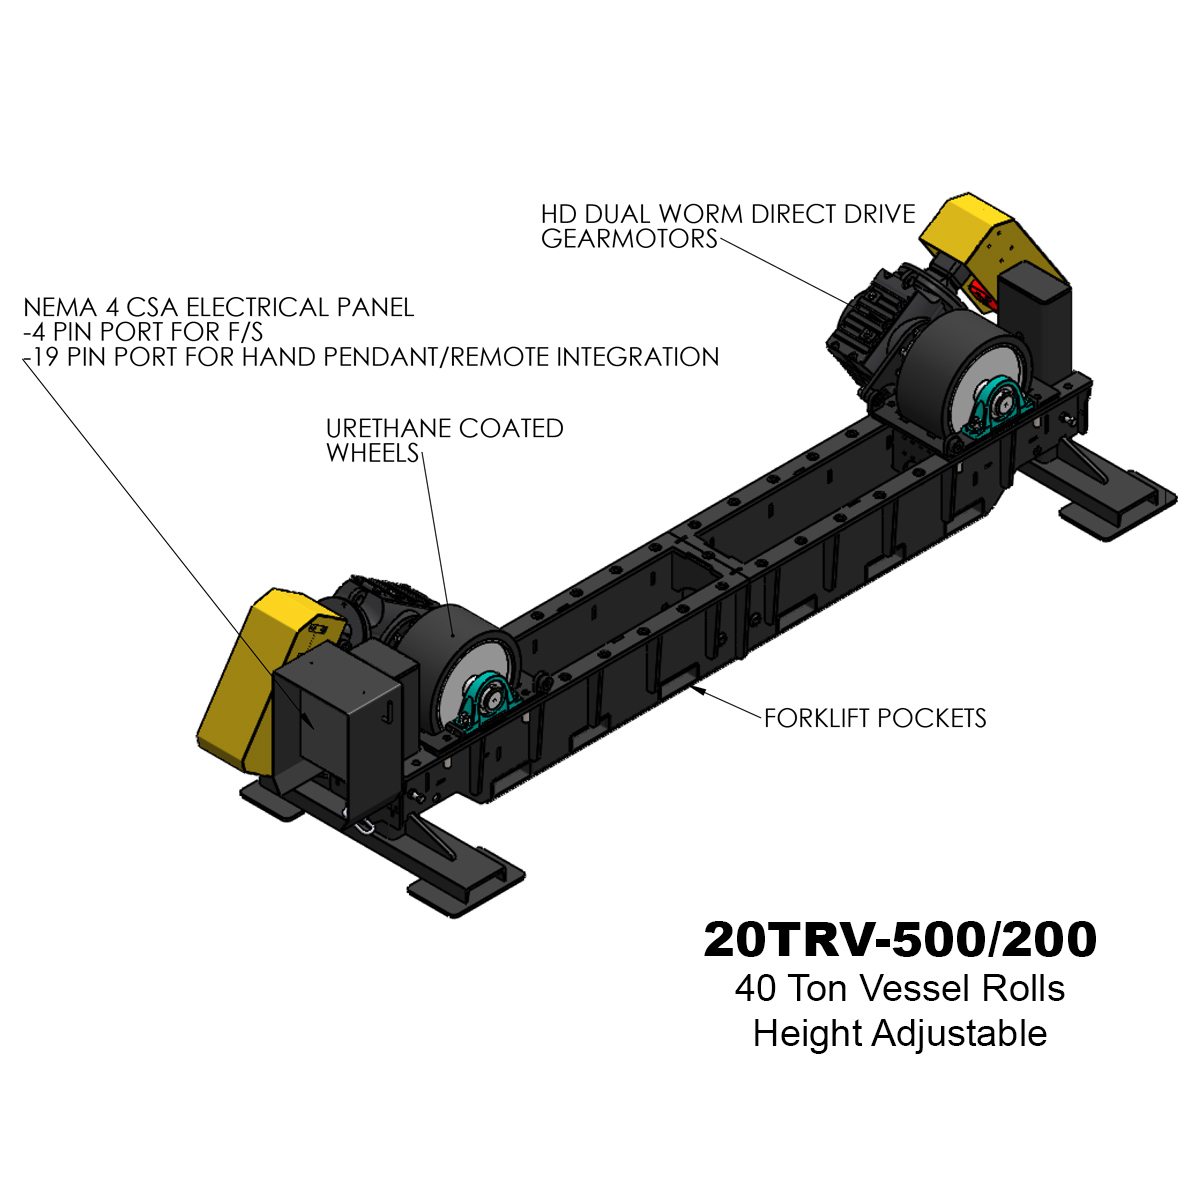 20TRV-500-200 vessel rollers